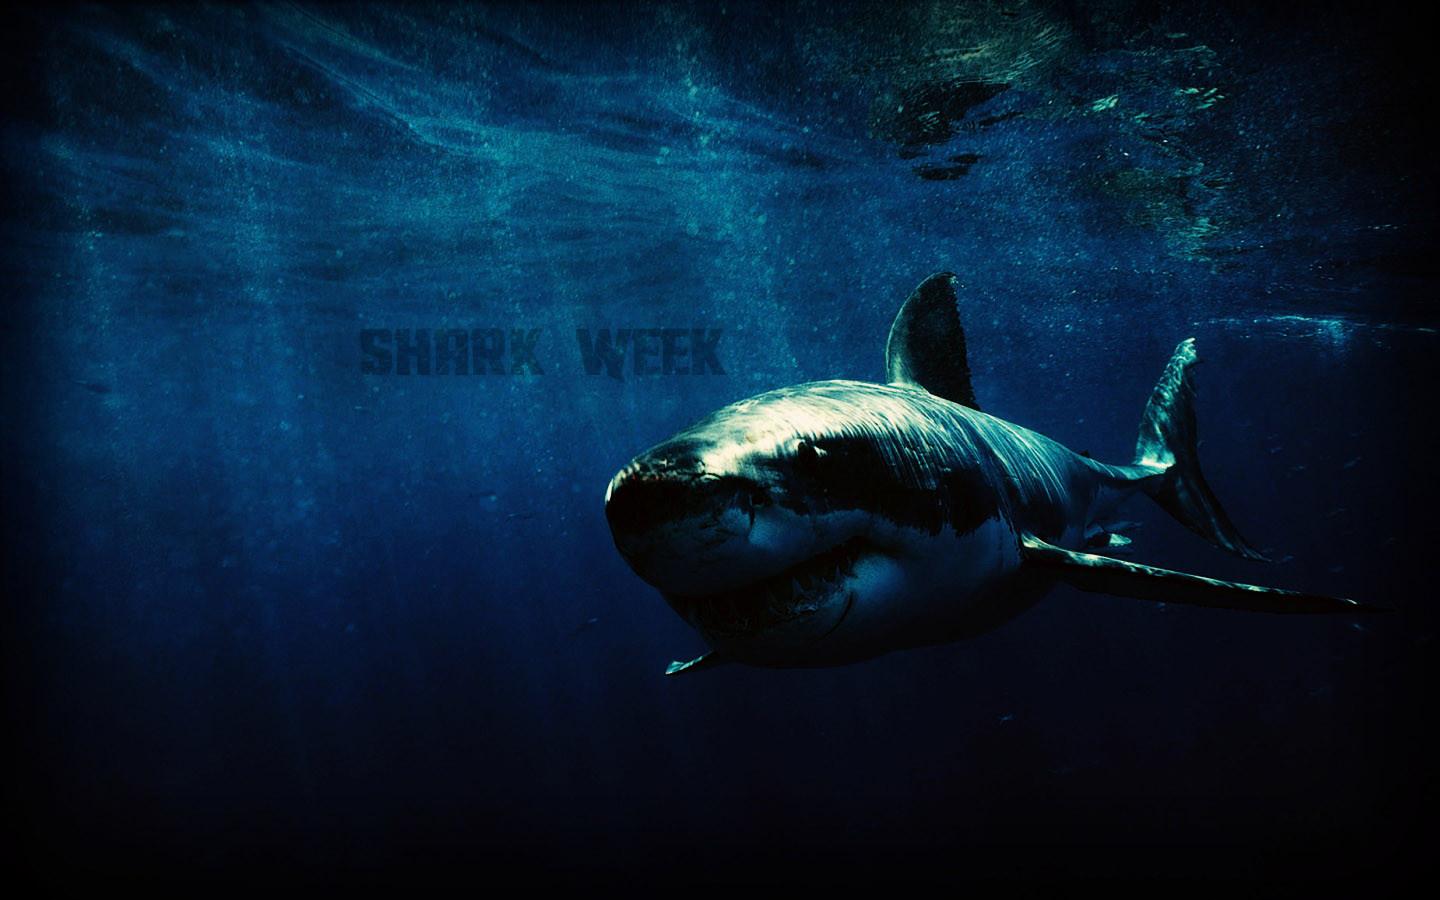 Wallpaper for shark week! [1920x1080]